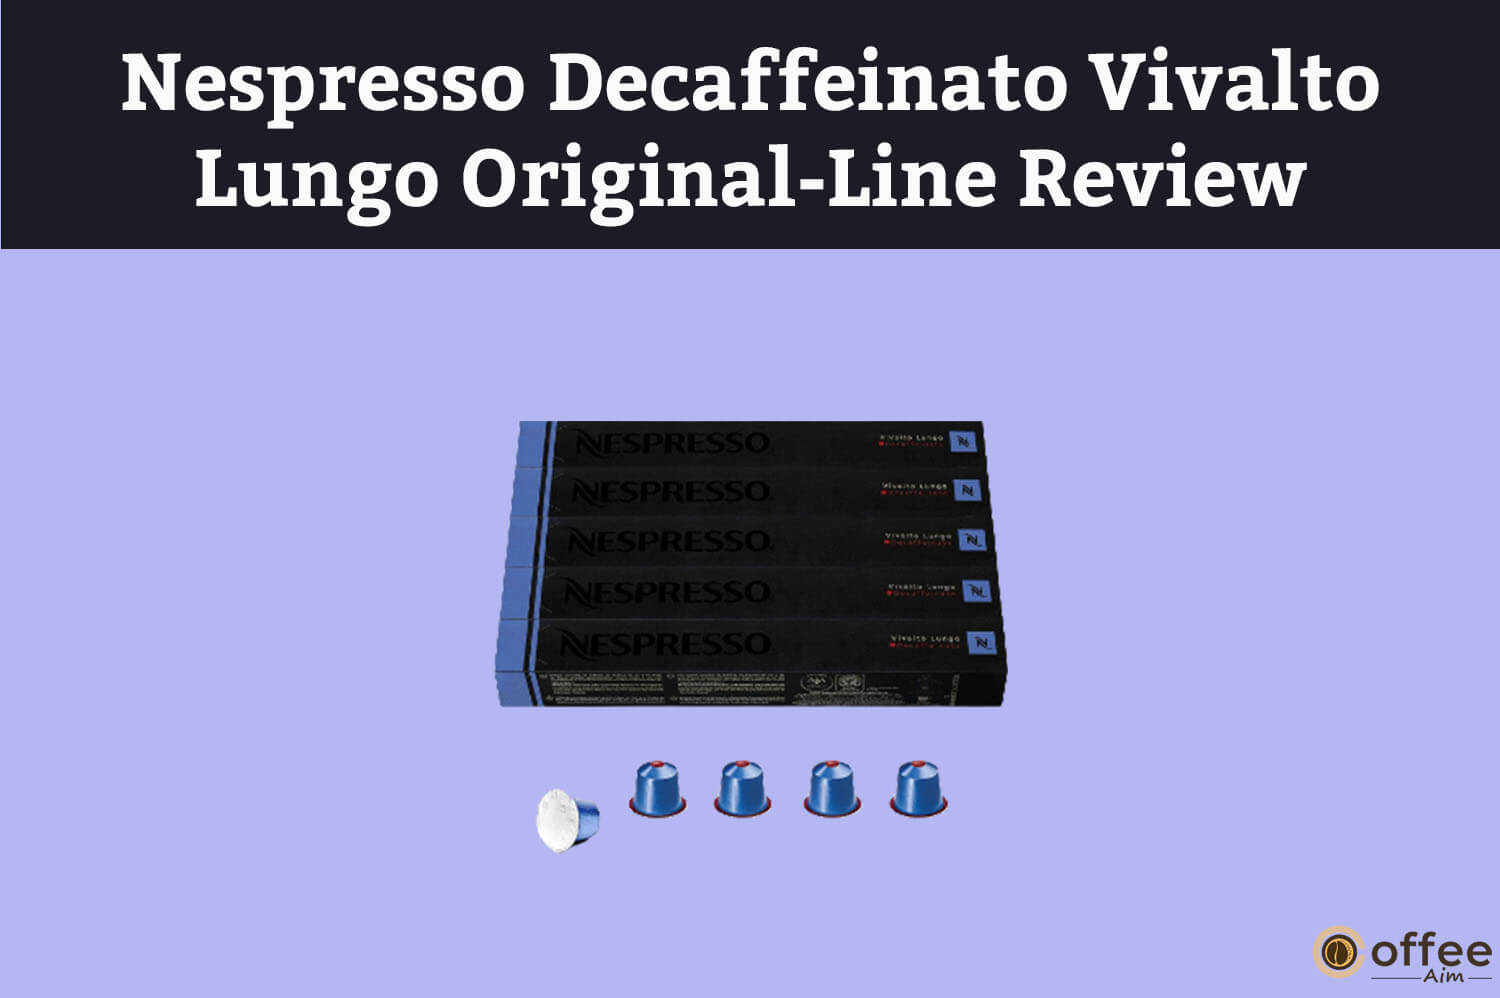 Featured image for the article "Nespresso Decaffeinato Vivalto Lungo Original-Line Review"